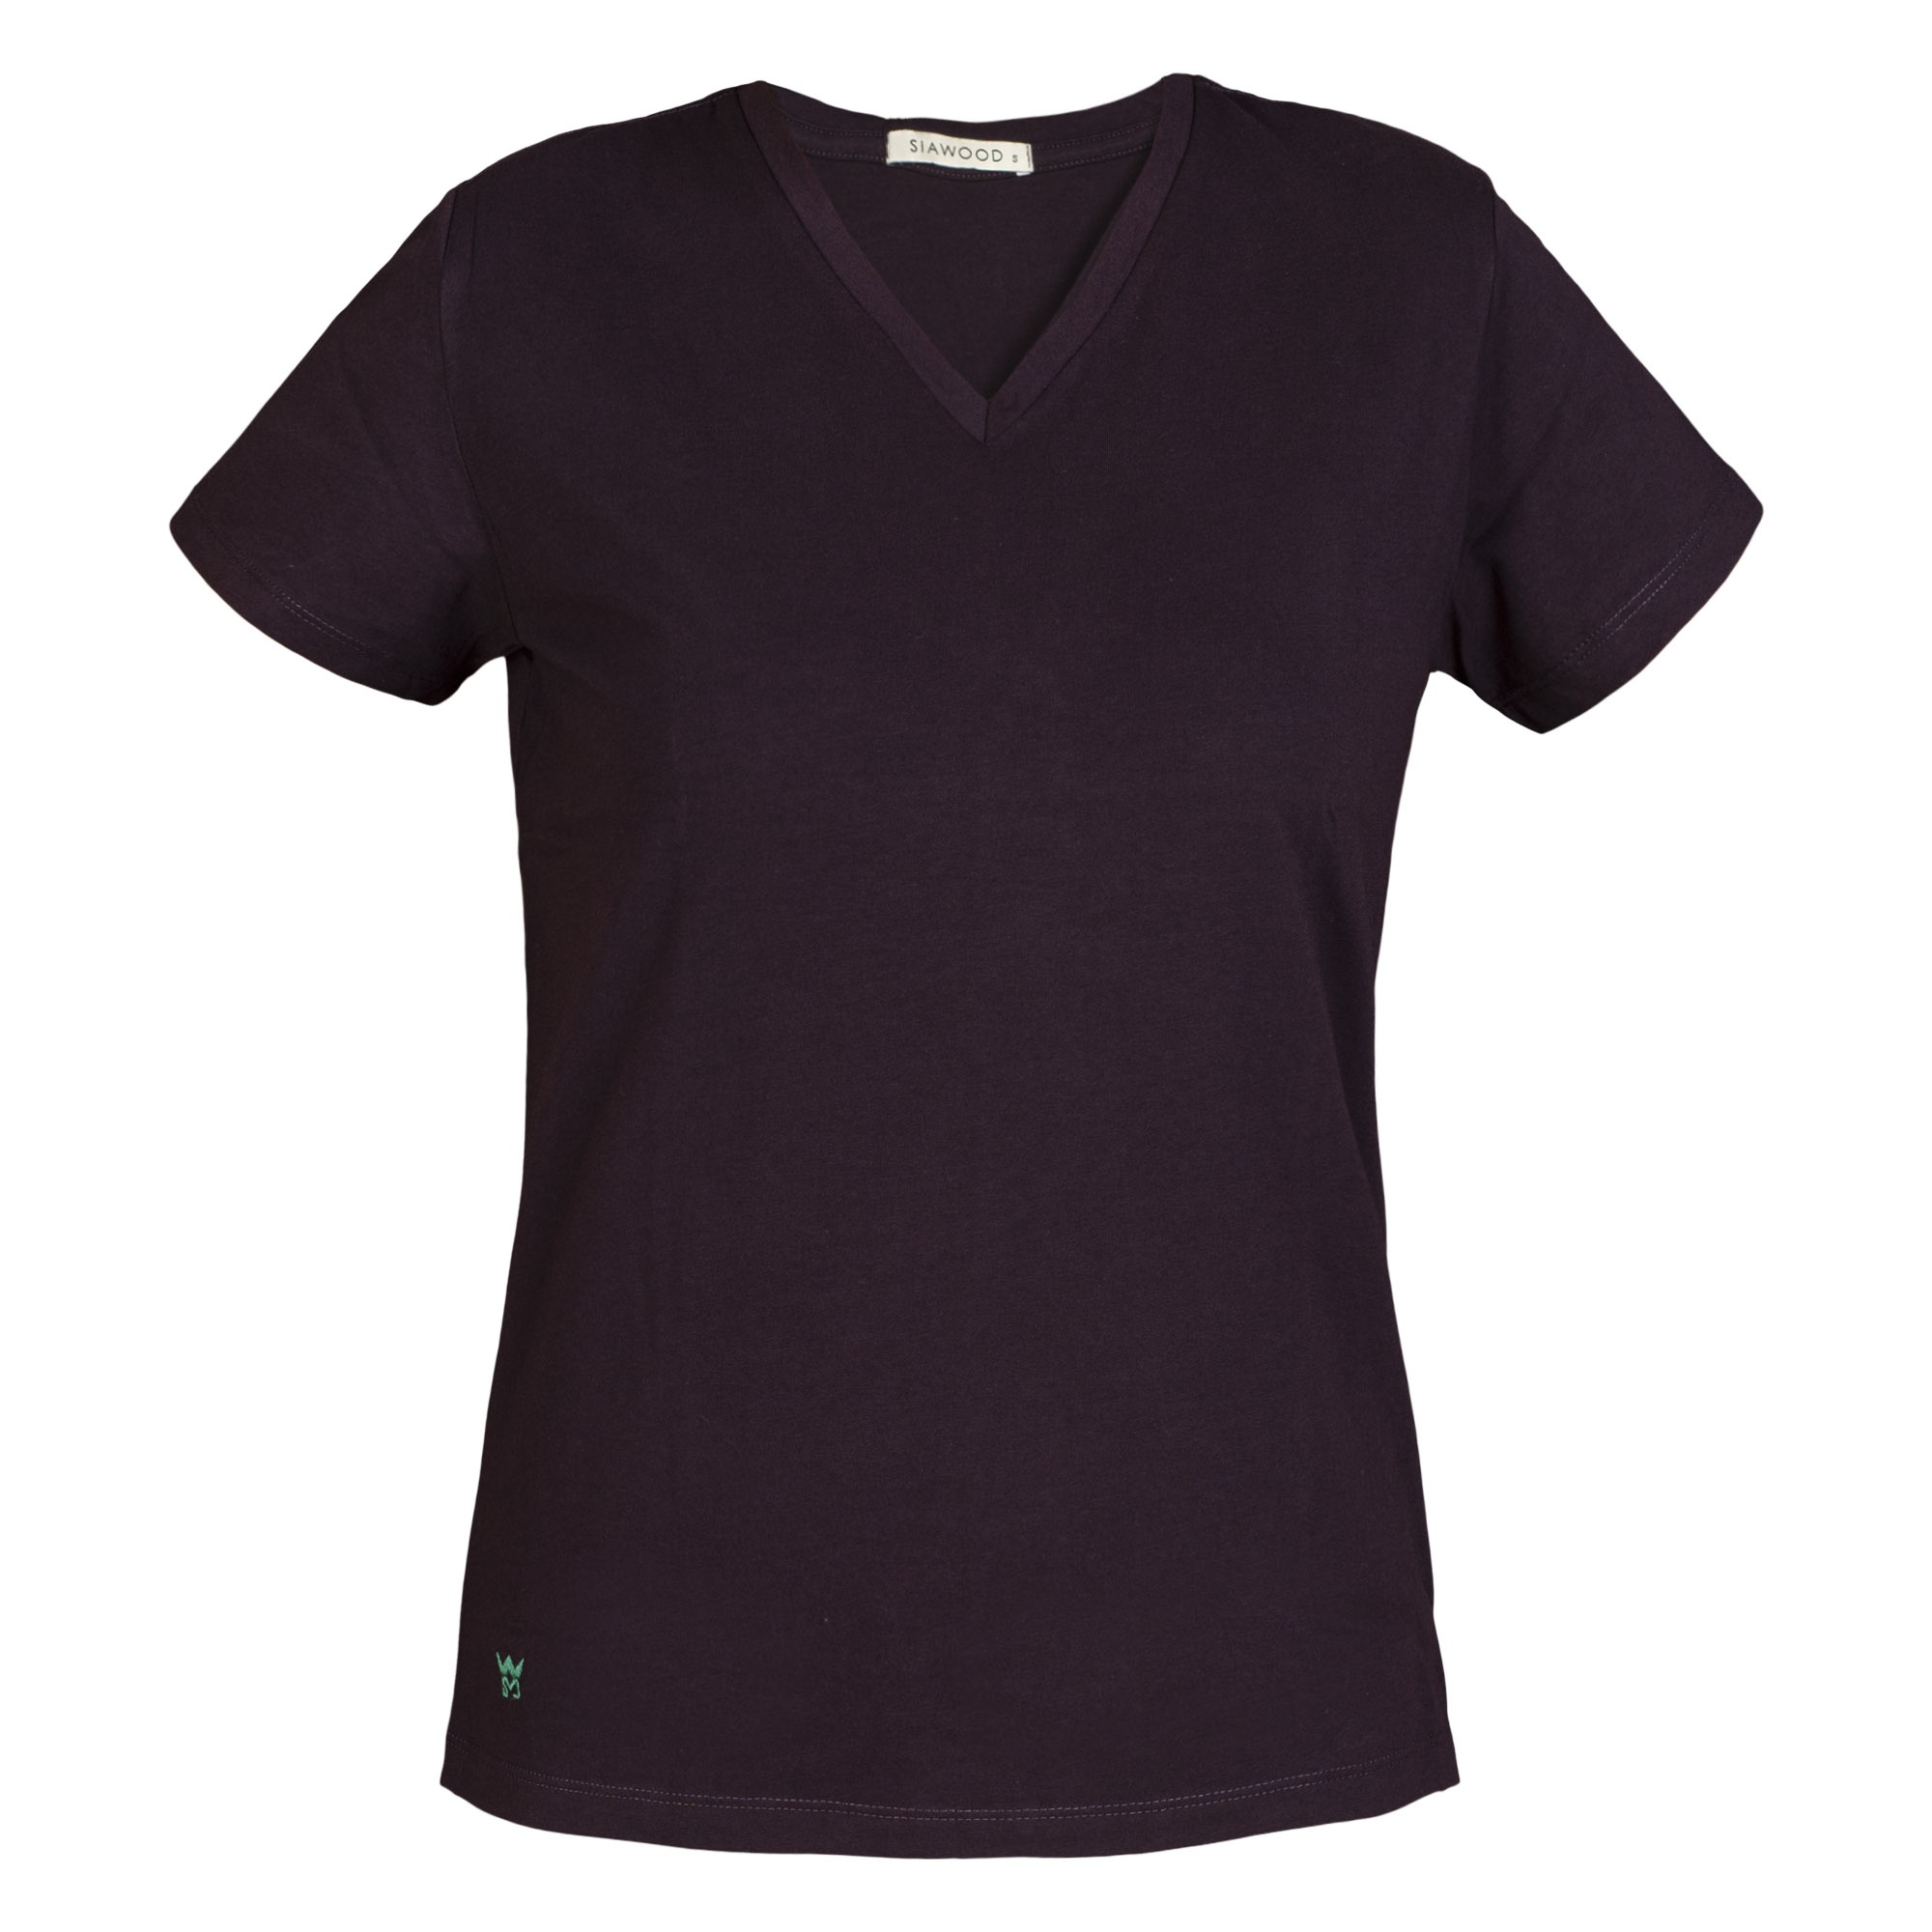 تي شرت زنانه سیاوود مدل V-BASIC کد 6100400-V0002 رنگ بادمجاني 